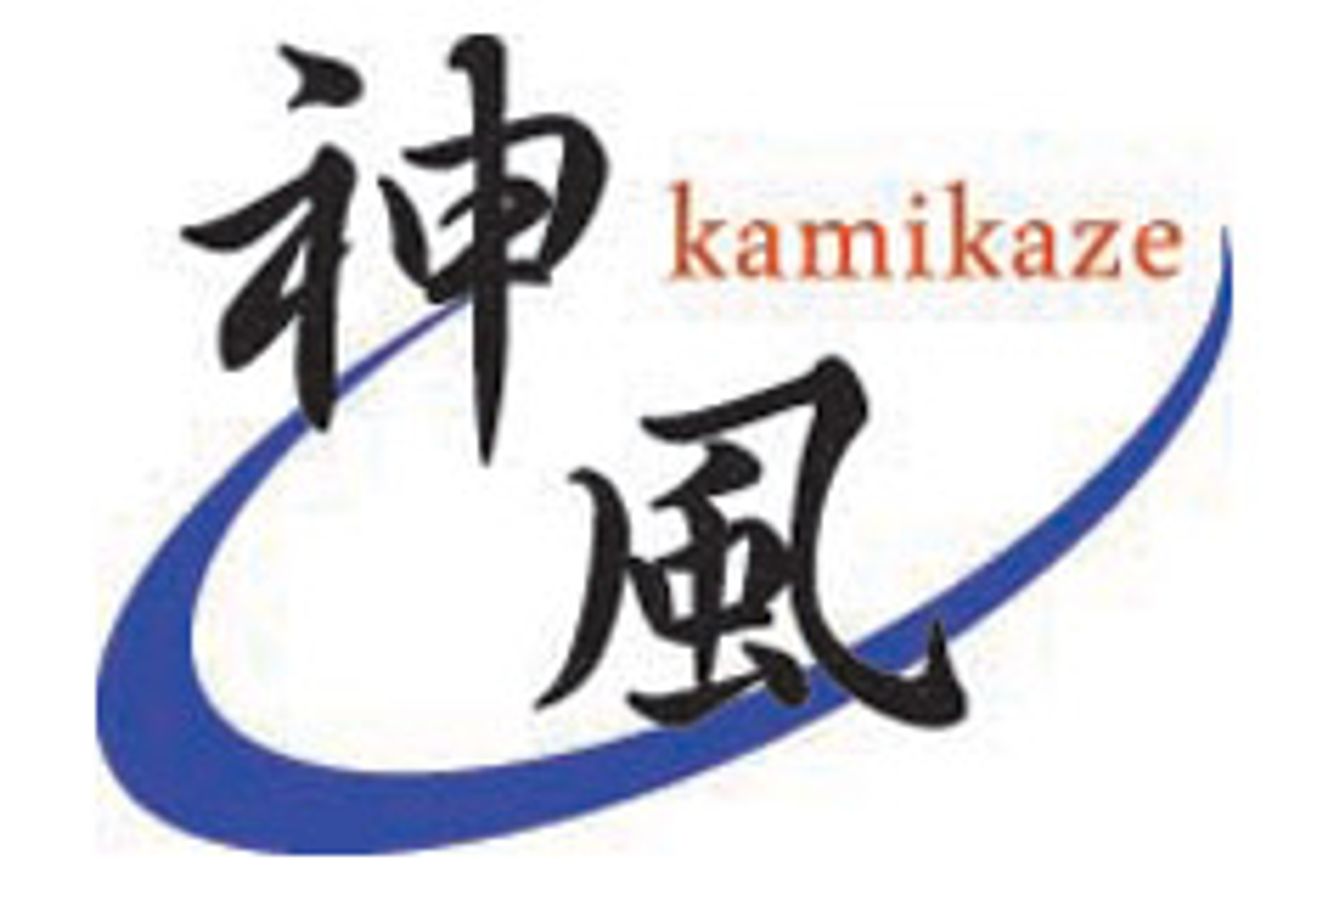 Kamikaze Entertainment